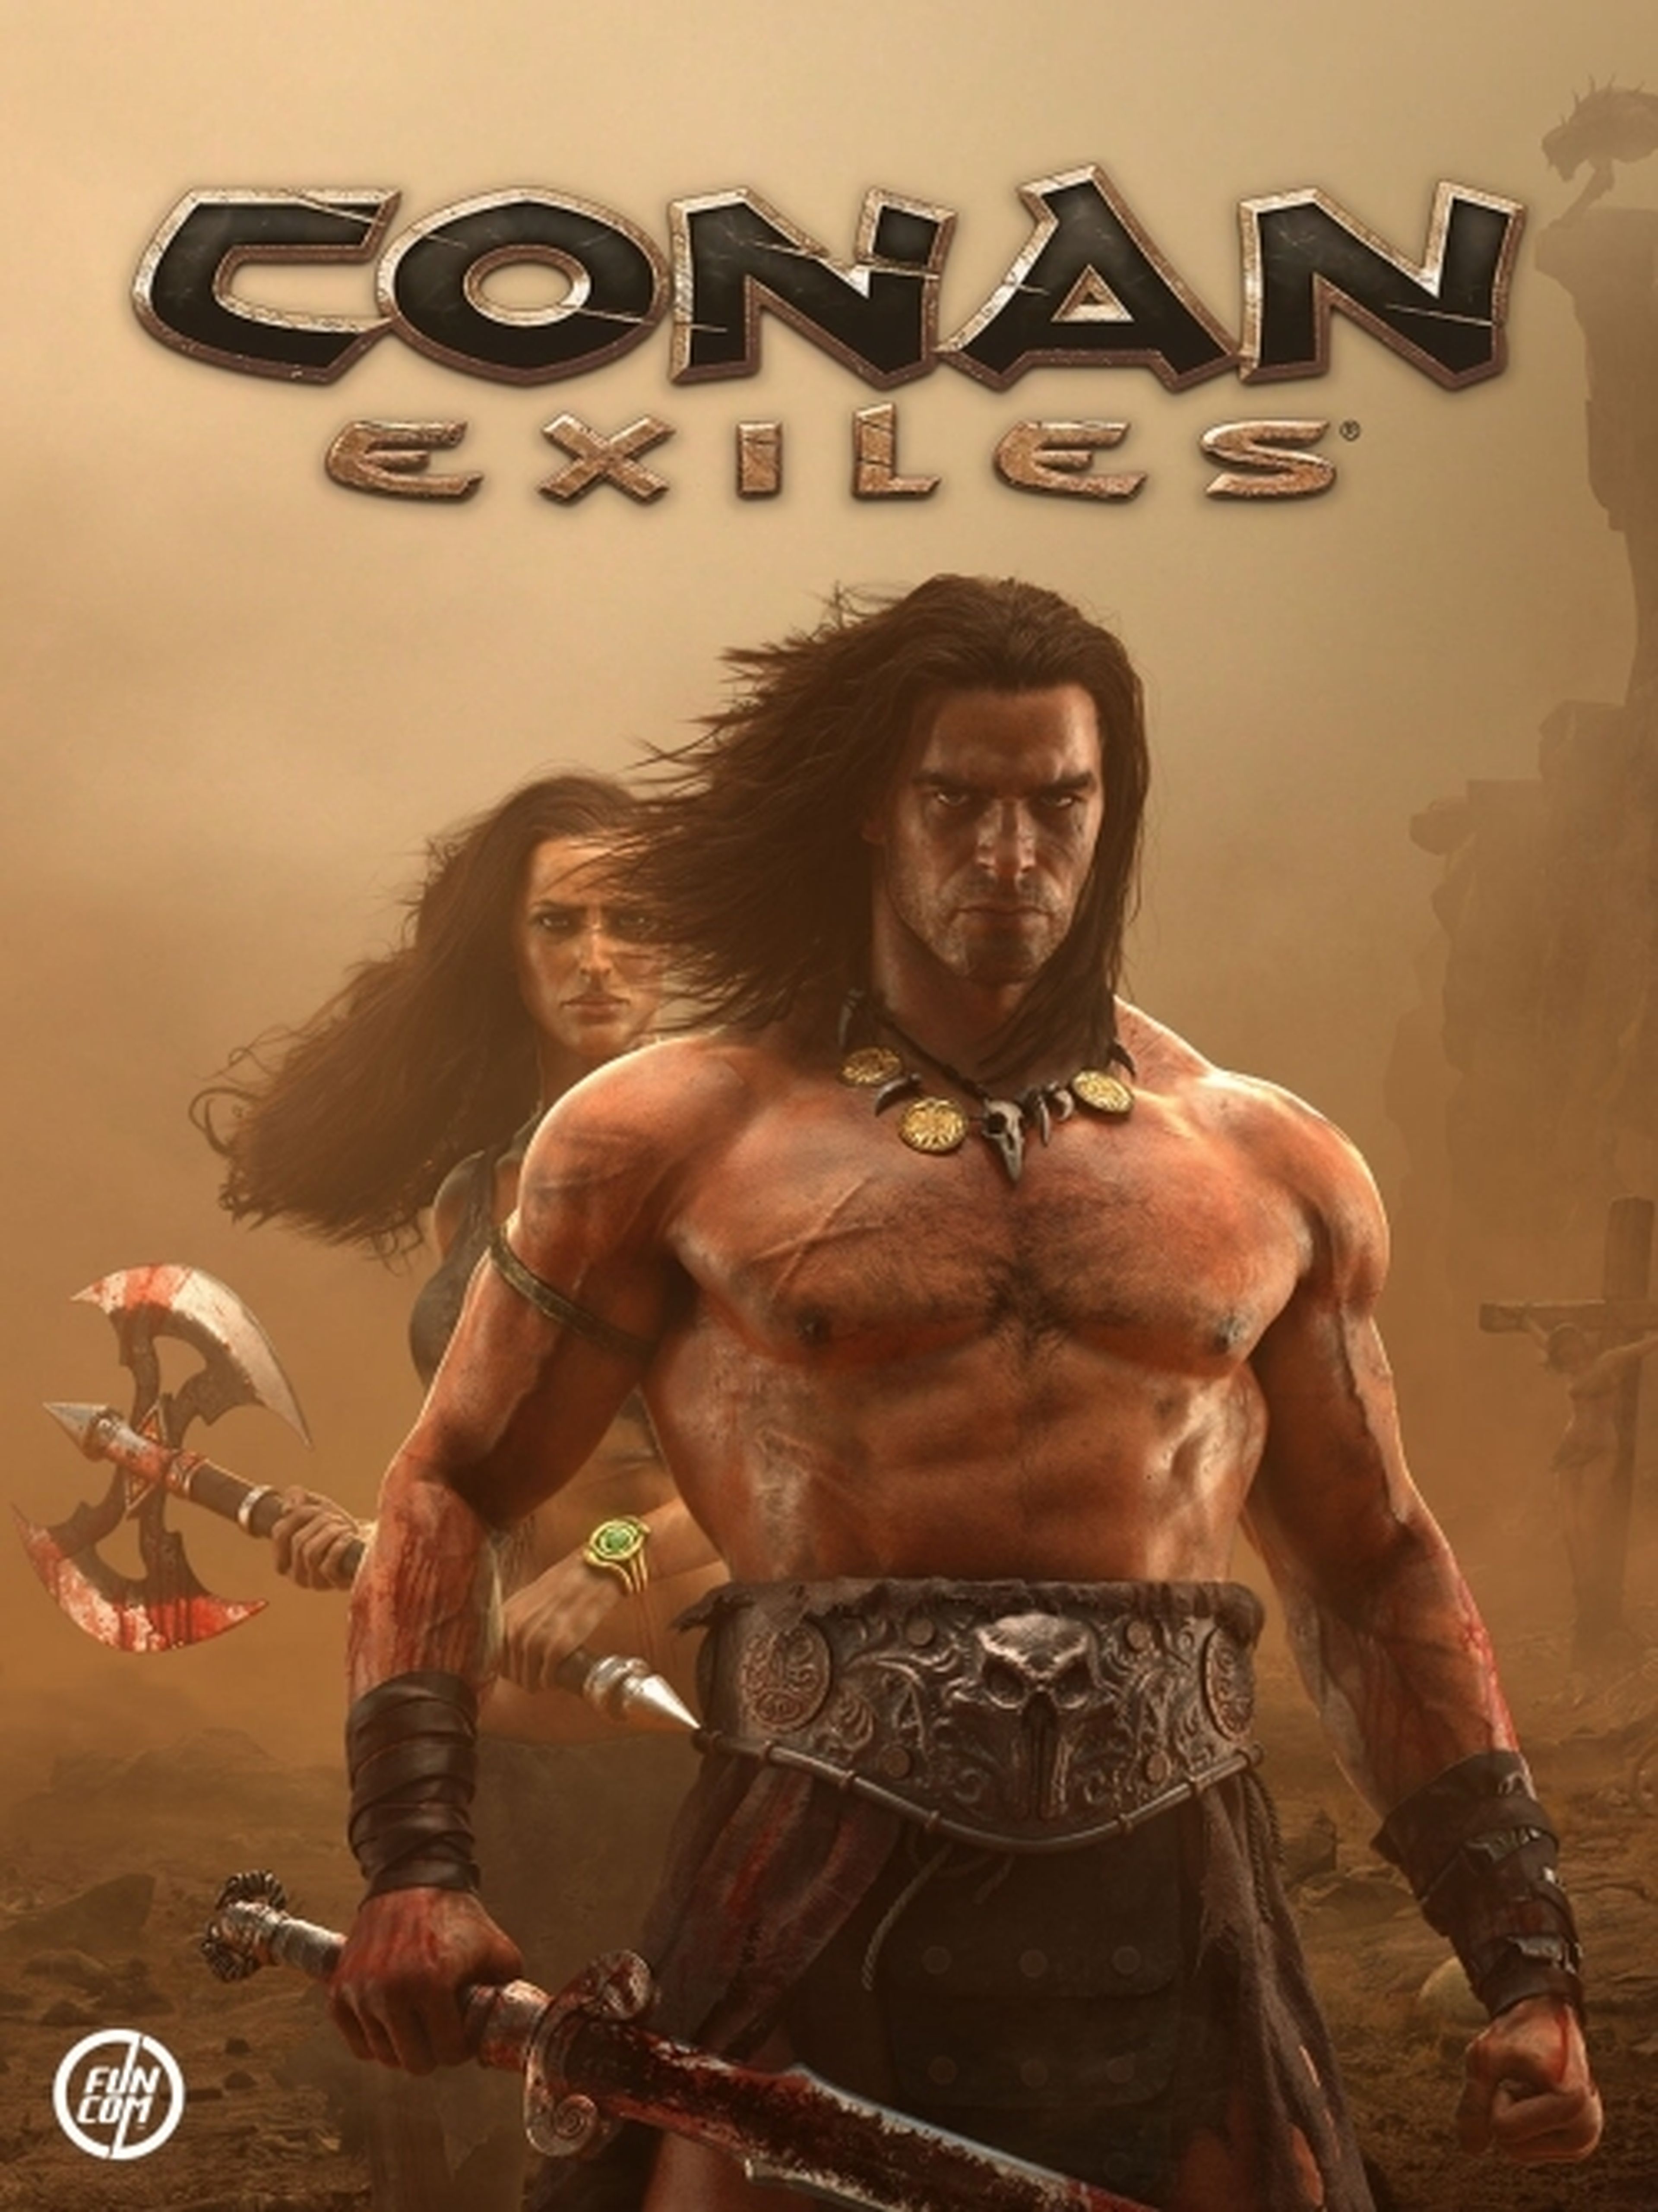 Conan exiles cover